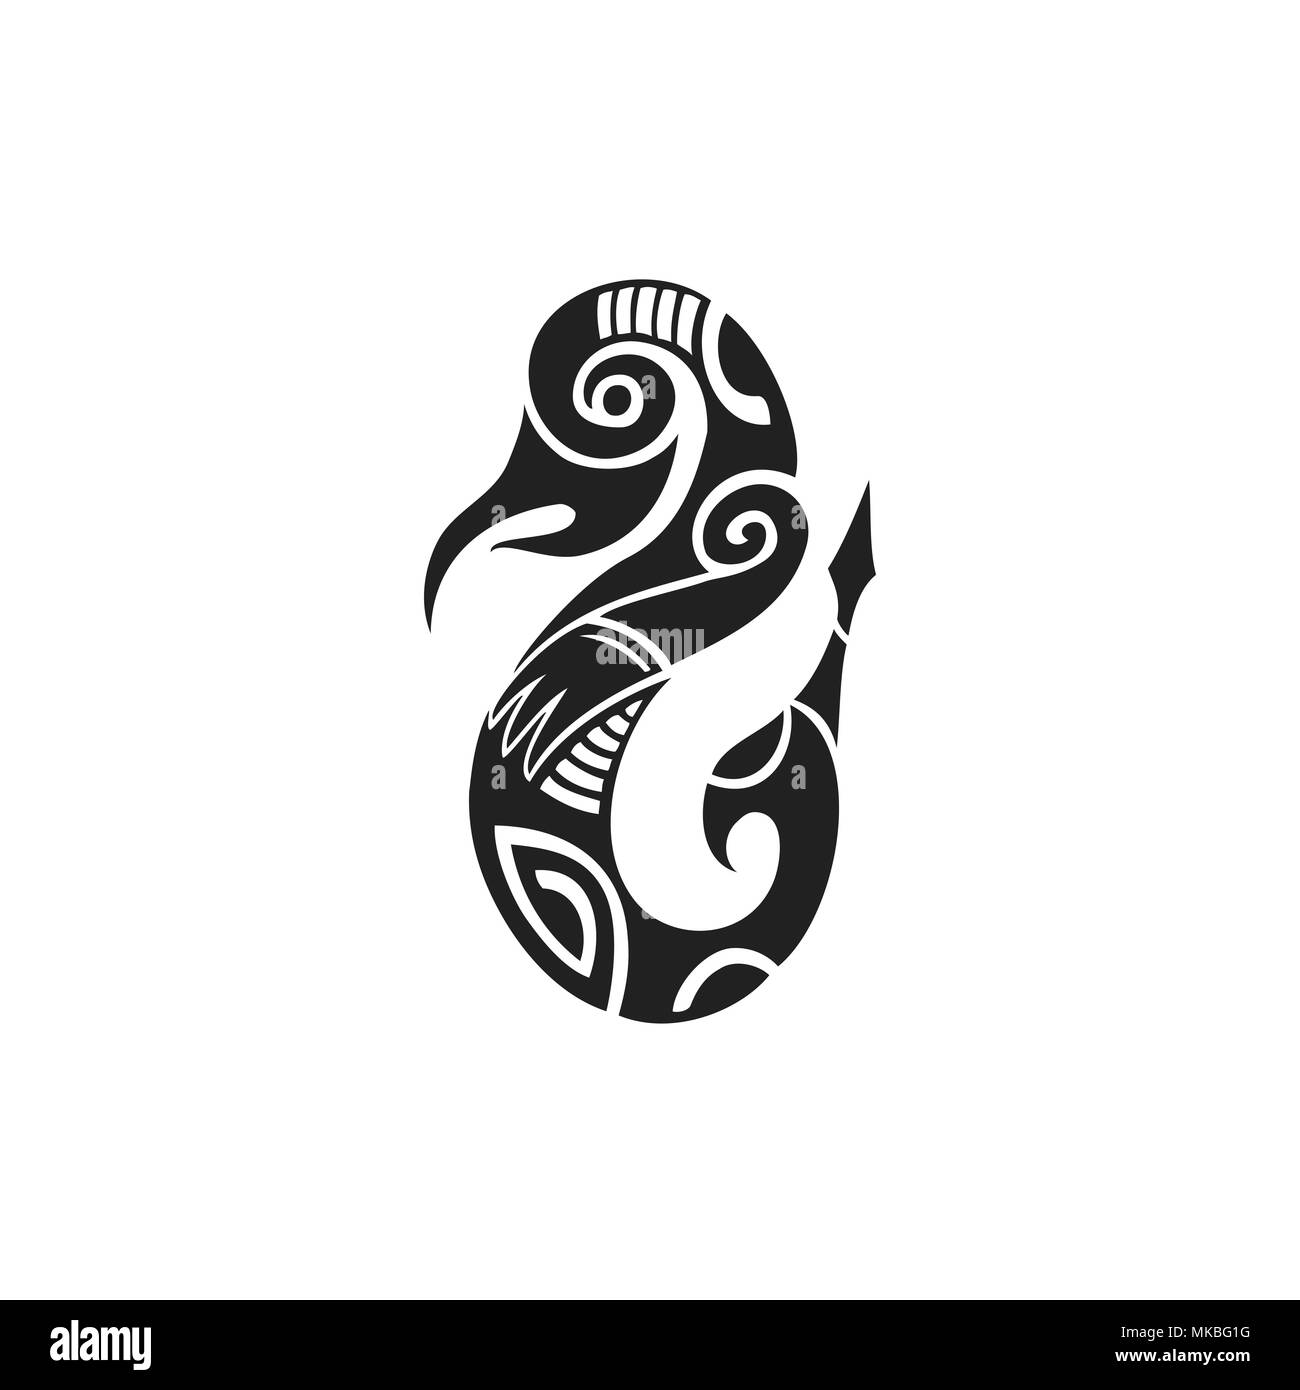 Vecteur d'encre monochrome noir dessinés à la main, symbole de l'art folklorique polynésienne autochtone créature mythologique Taniwha illustration isolé sur fond blanc Illustration de Vecteur